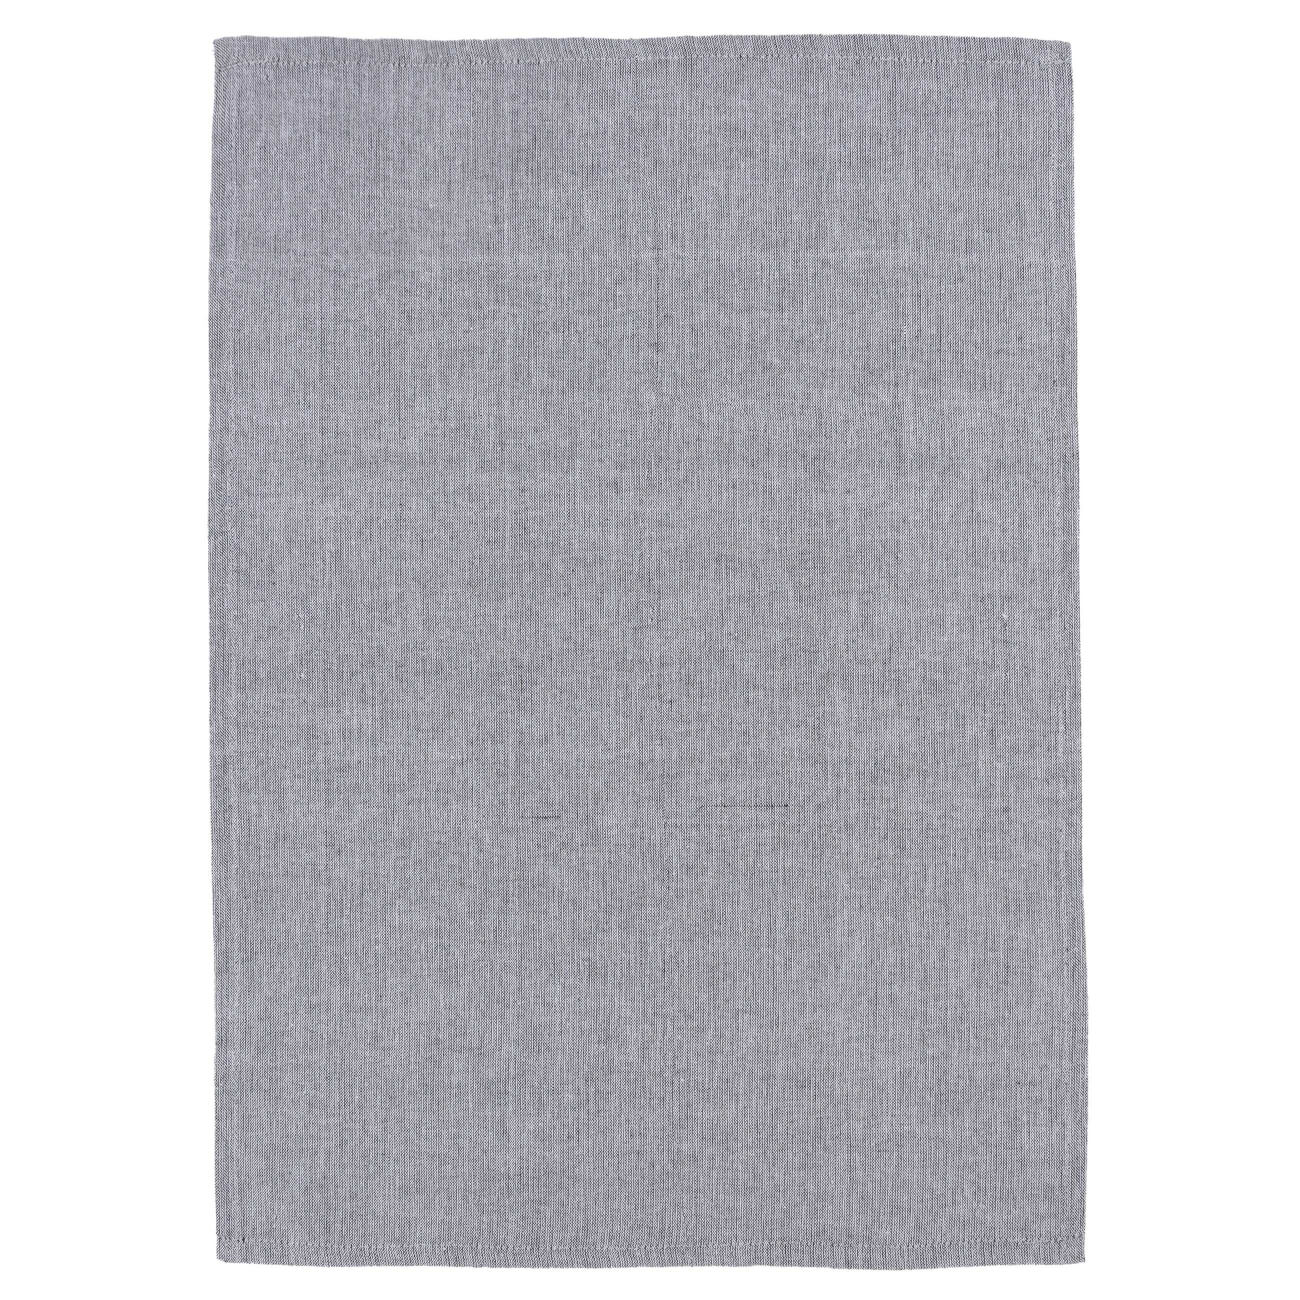 Полотенце кухонное, 40х60 см, хлопок, серый меланж, Melange grey изображение № 1